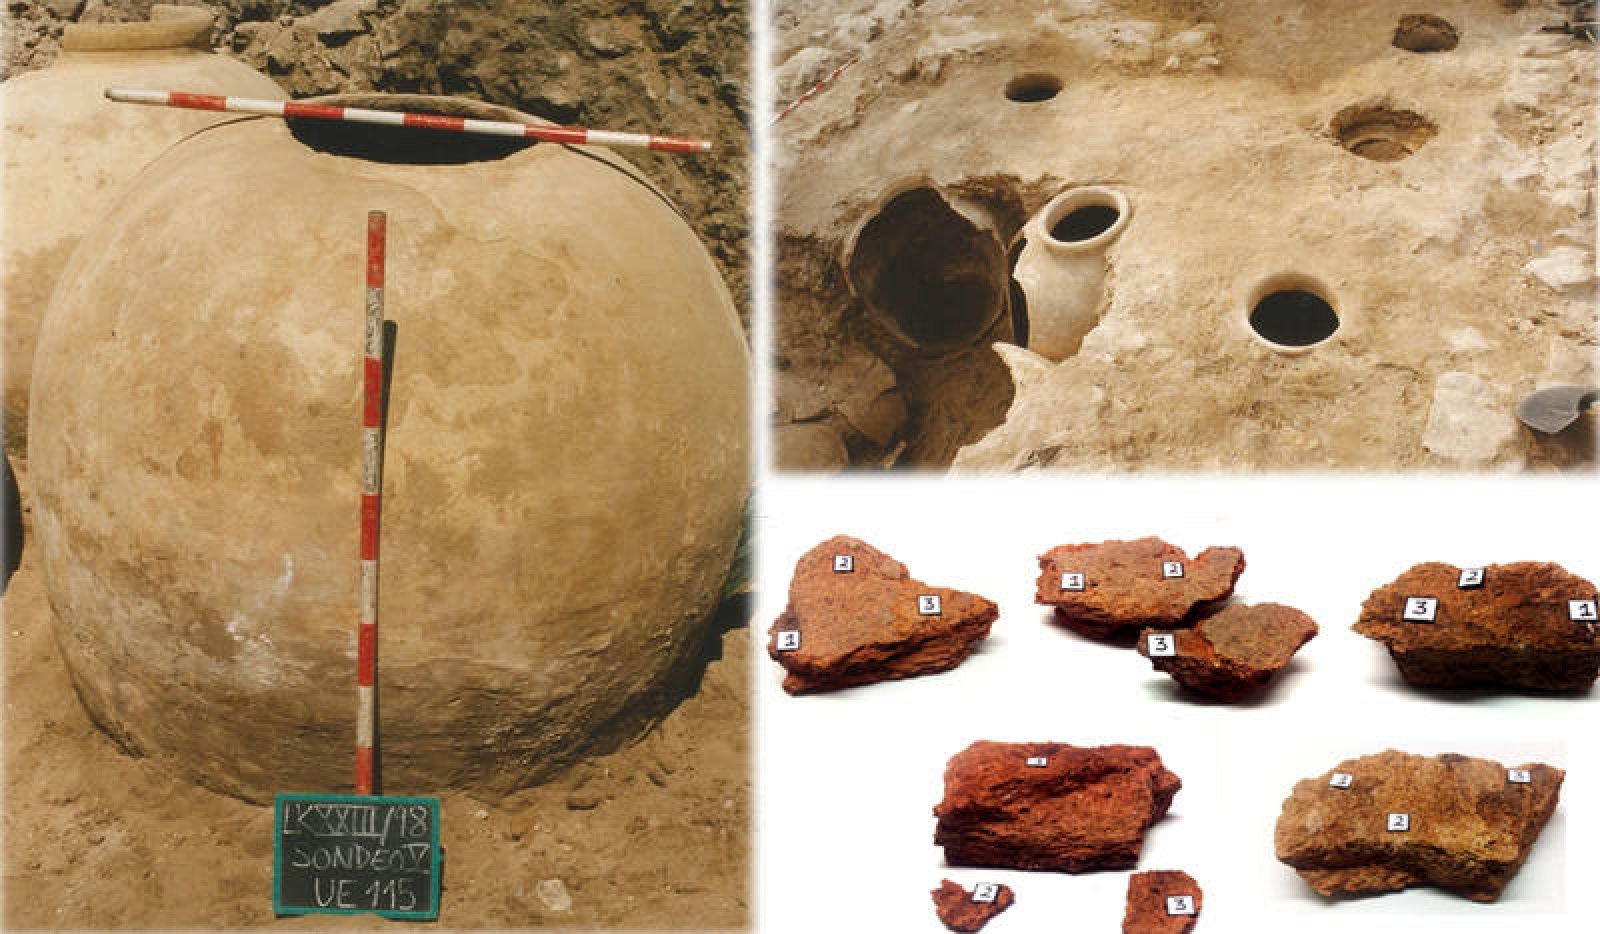 Cerámicas arqueológicas encontradas en el yacimiento de Lekeitio.